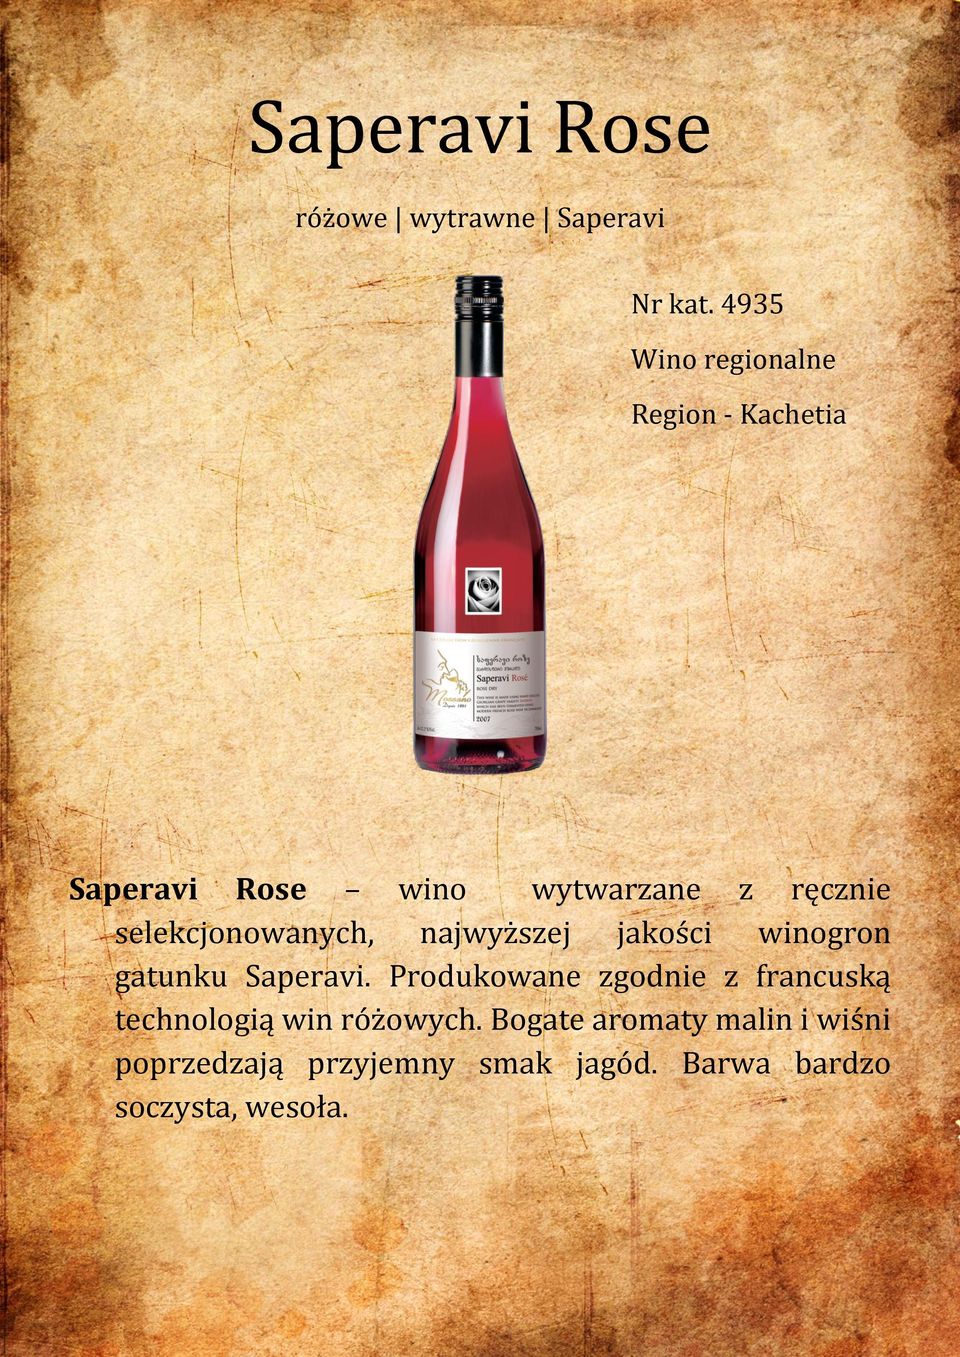 selekcjonowanych, najwyższej jakości winogron gatunku Saperavi.